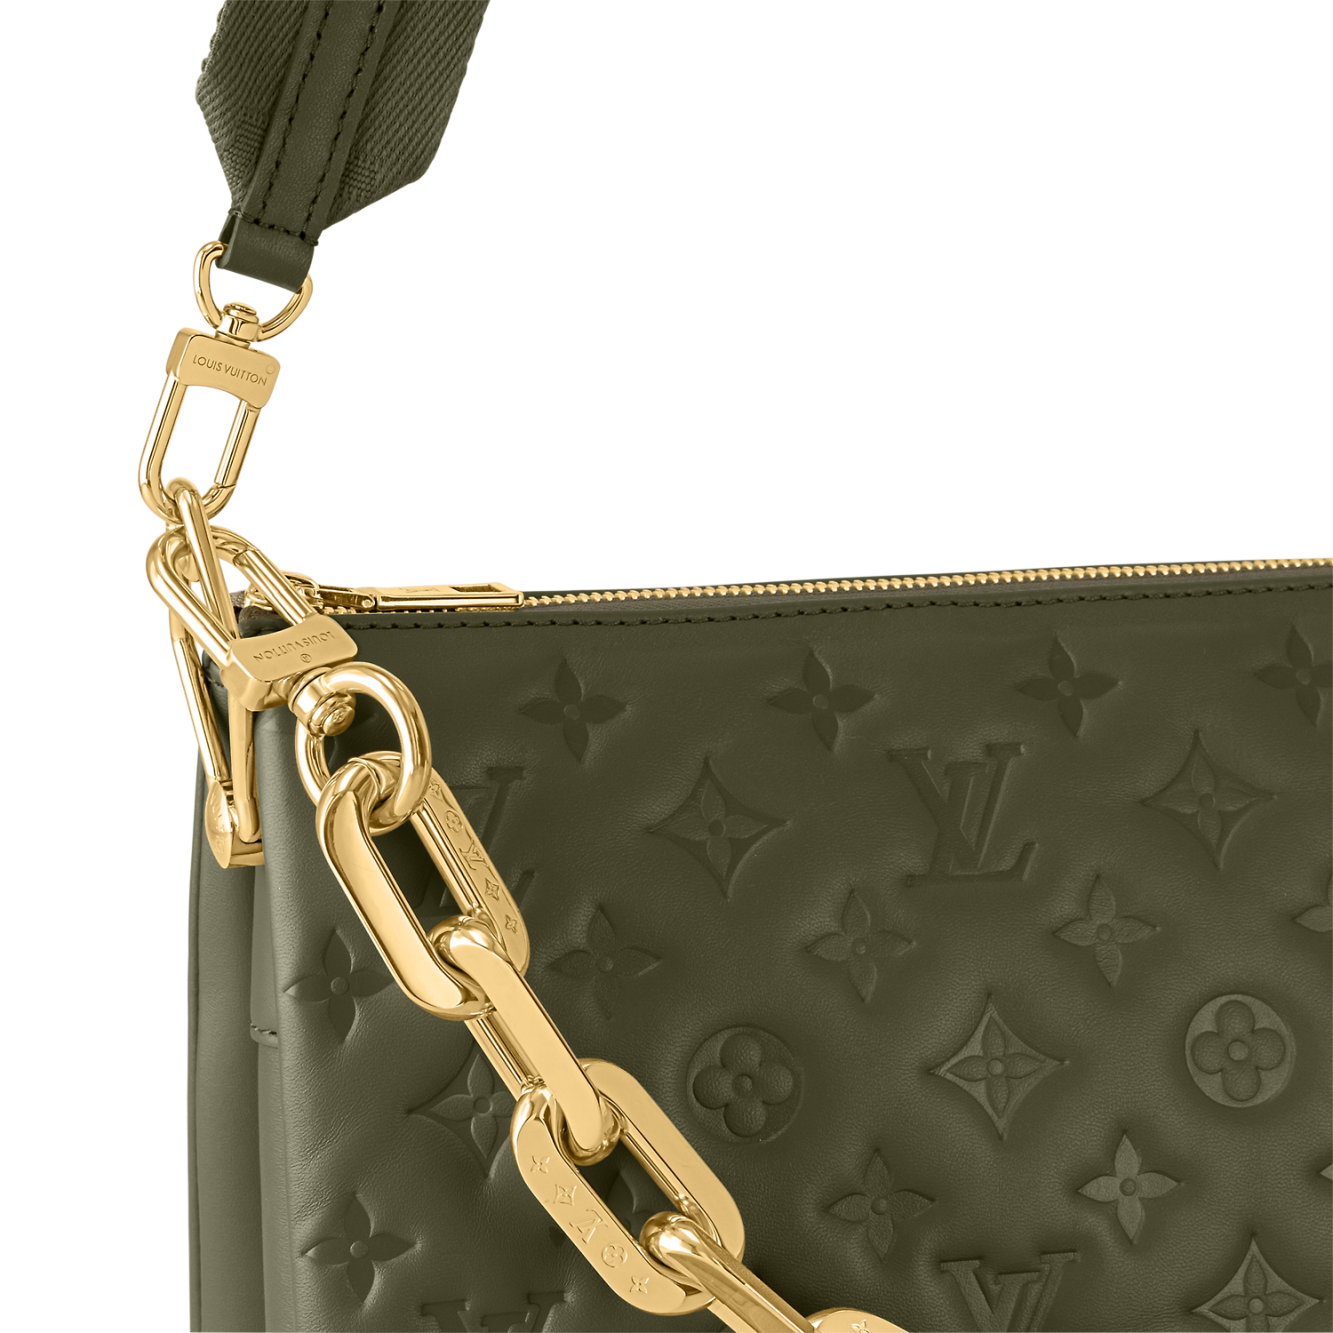 Louis Vuitton Coussin MM Bag - Vitkac shop online